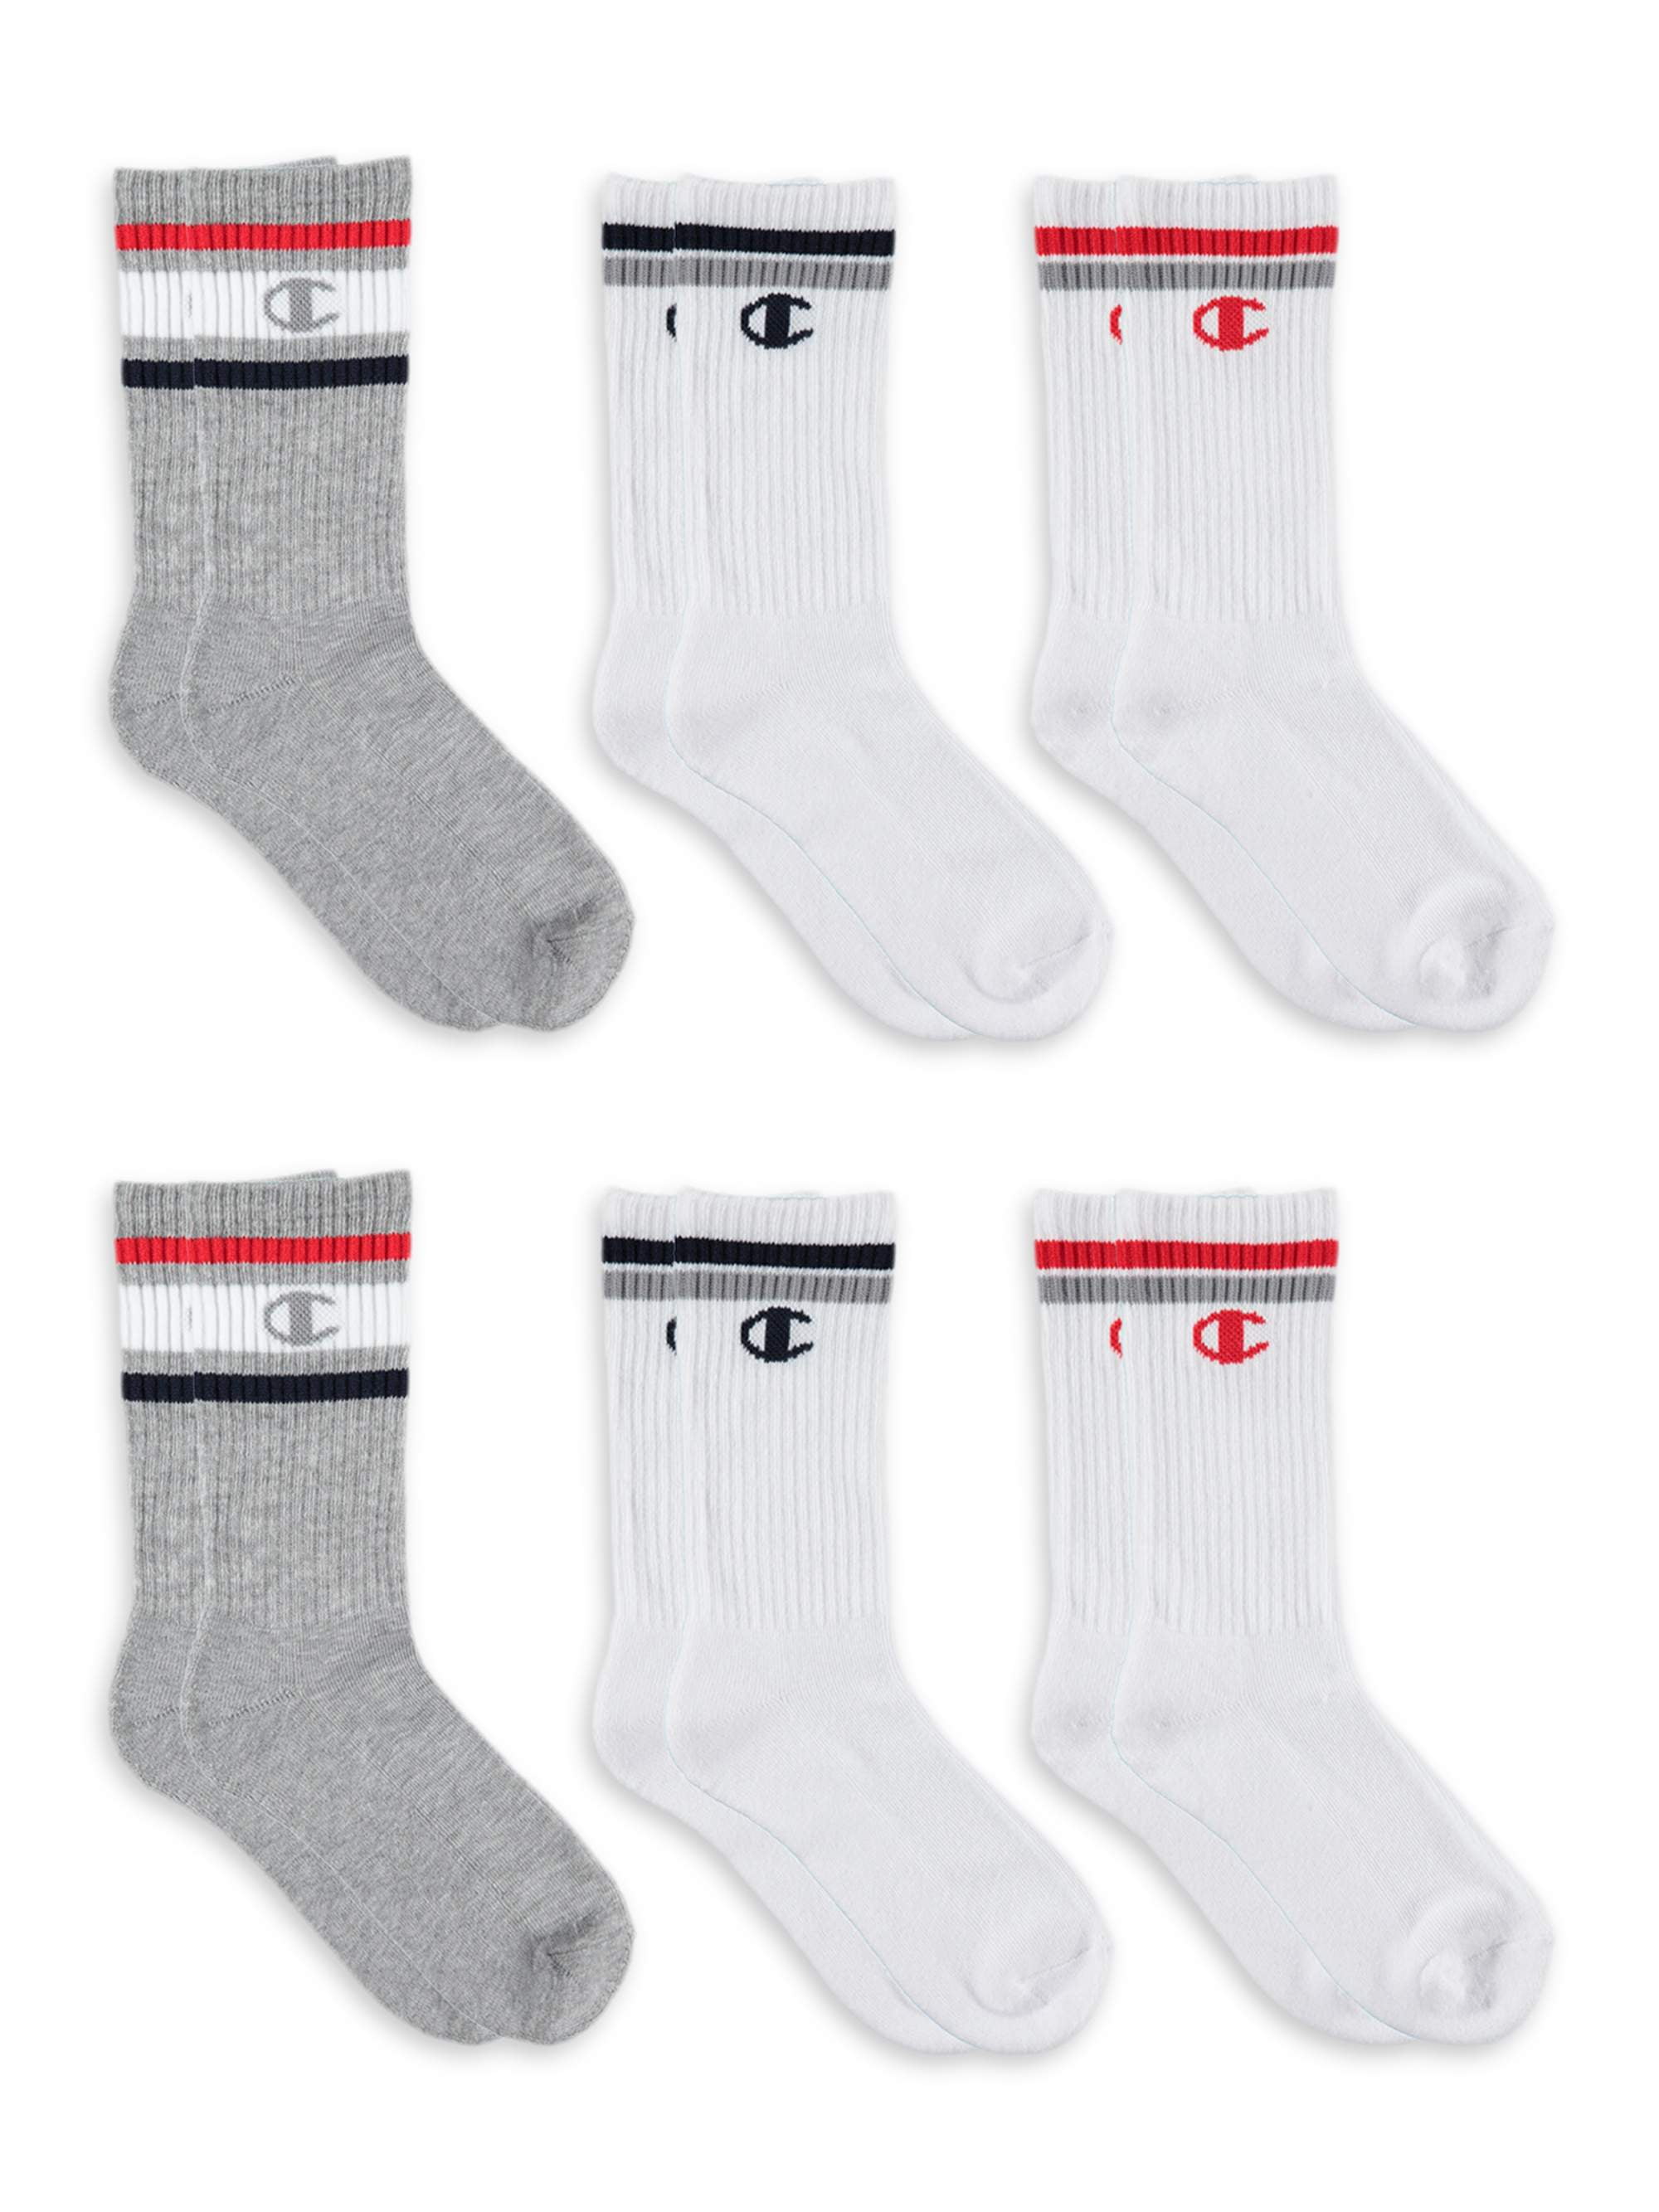 Champion Unisex Socks, 6 Pack Crew Socks, Sizes 7 - 11